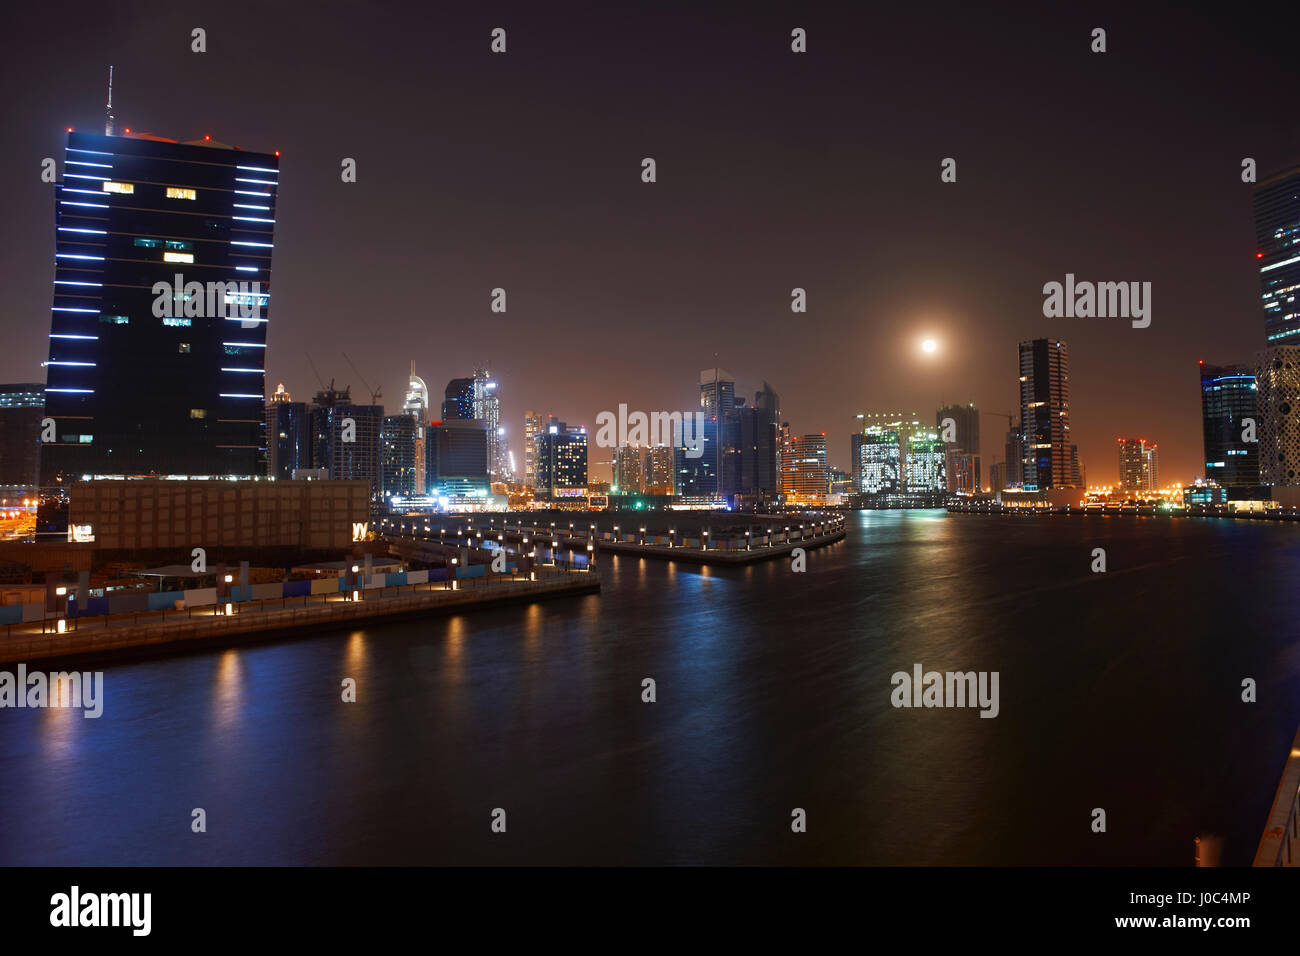 Paisaje urbano en la noche mostrando el Canal de Dubai, Dubai, Emiratos Árabes Unidos Foto de stock